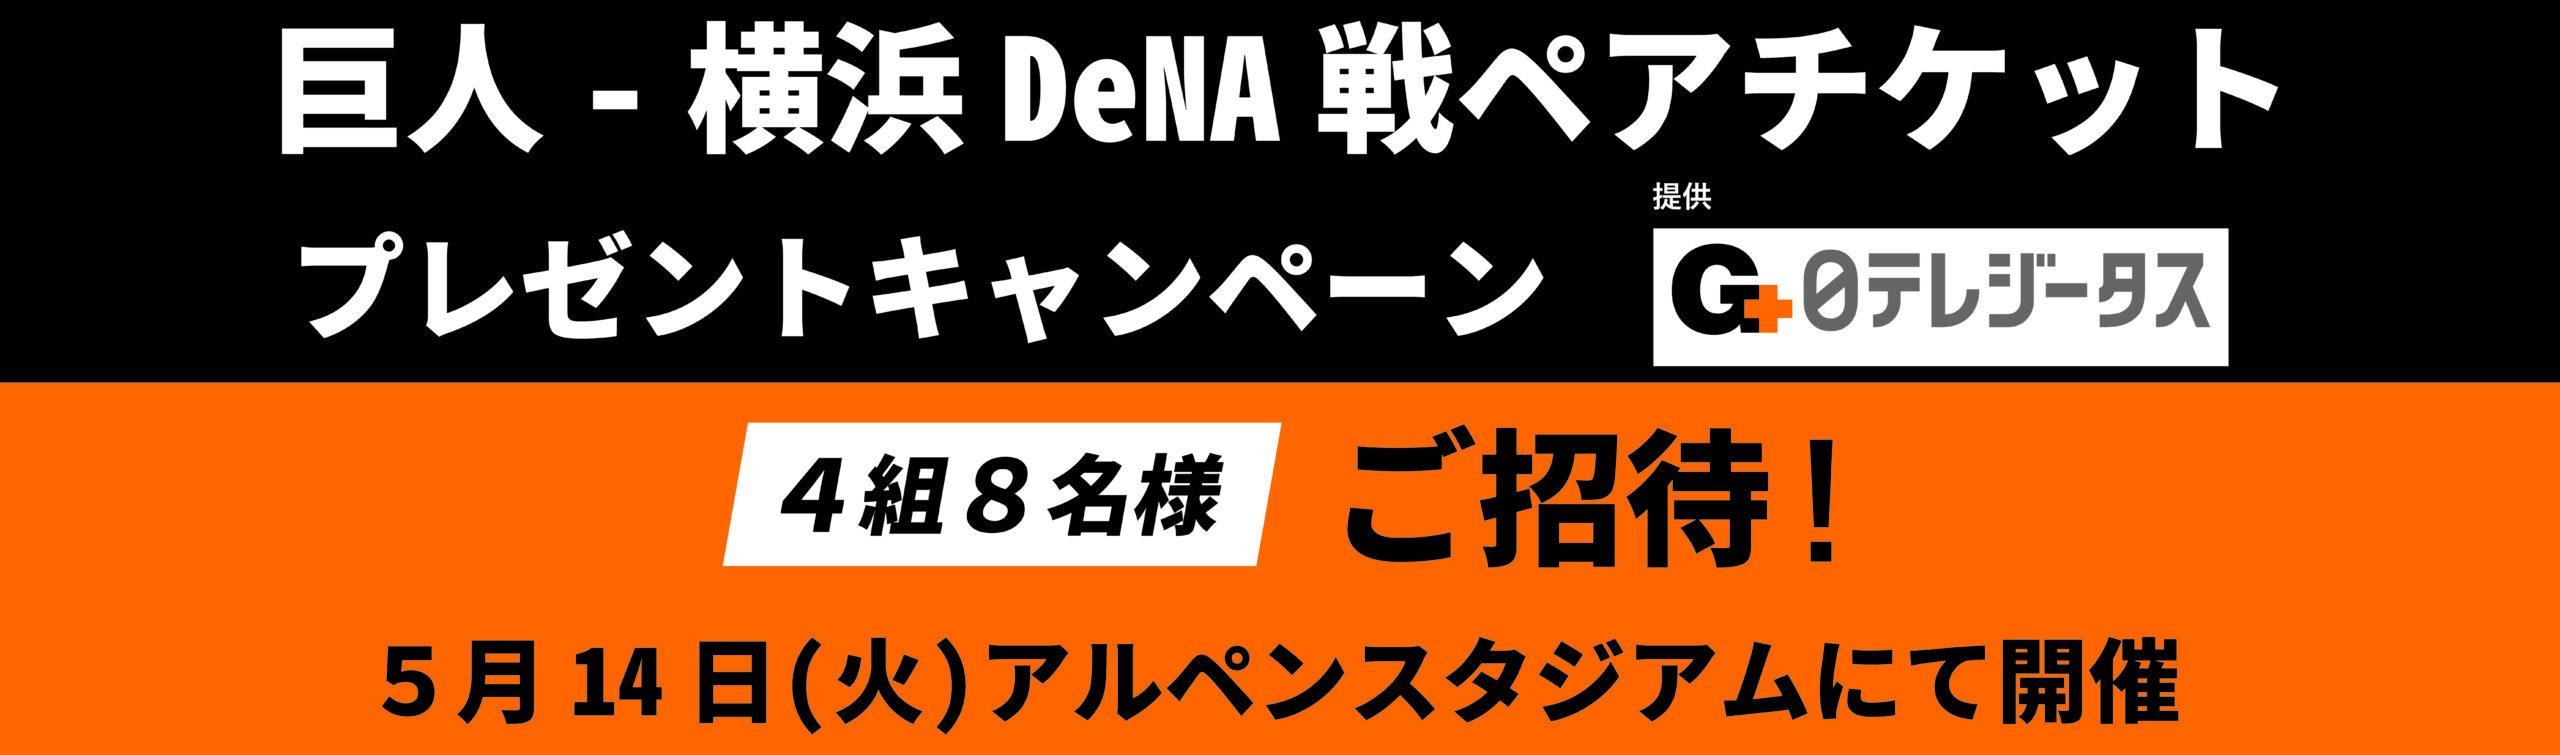 巨人-横浜DeNA戦ペアチケットプレゼントキャンペーン